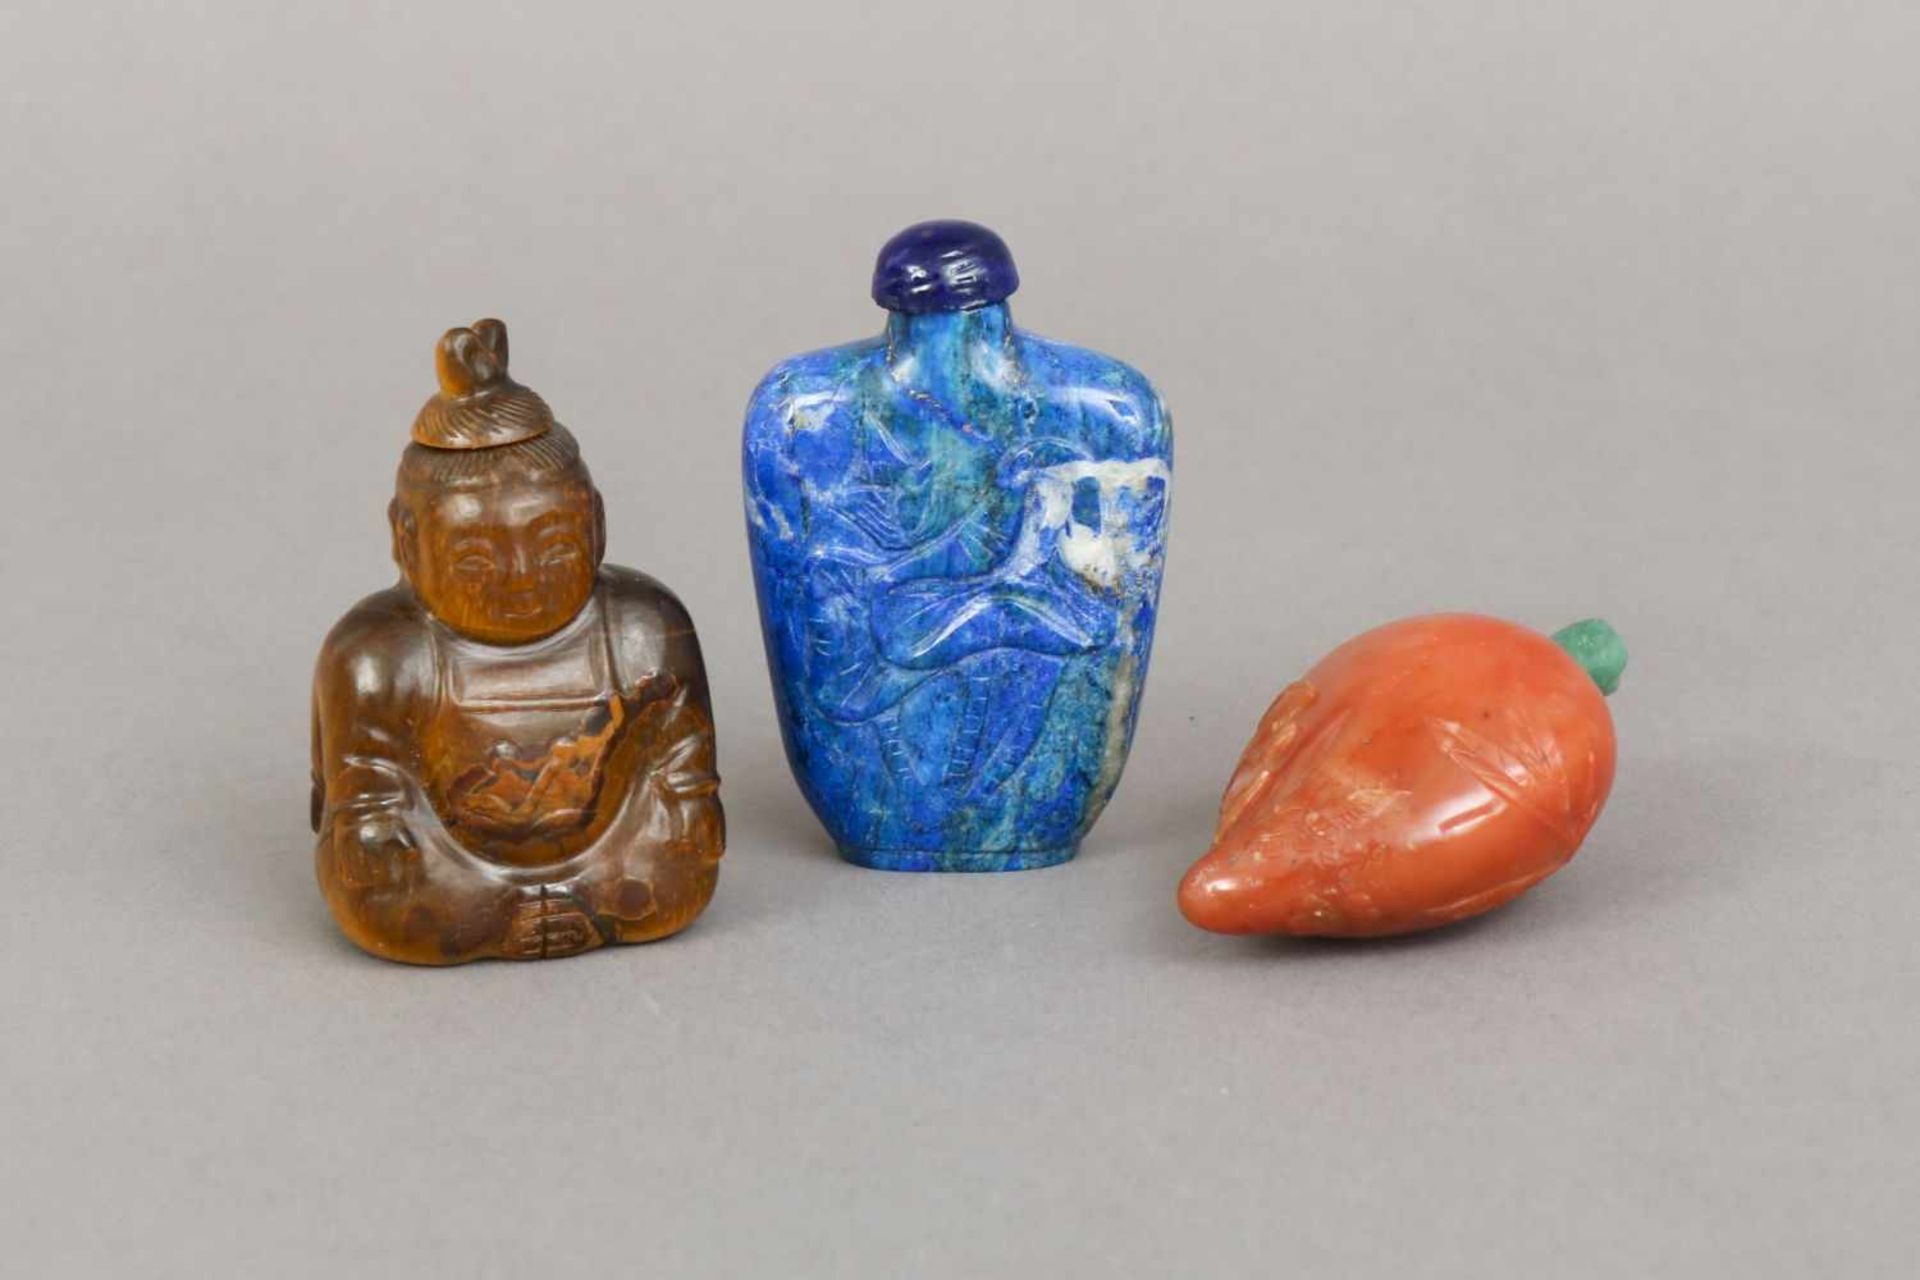 3 chinesische Snuff-bottles, Stein, geschnitzt1x Tigerauge in Form eines Buddhas (beidseitig), 1 x - Bild 2 aus 3